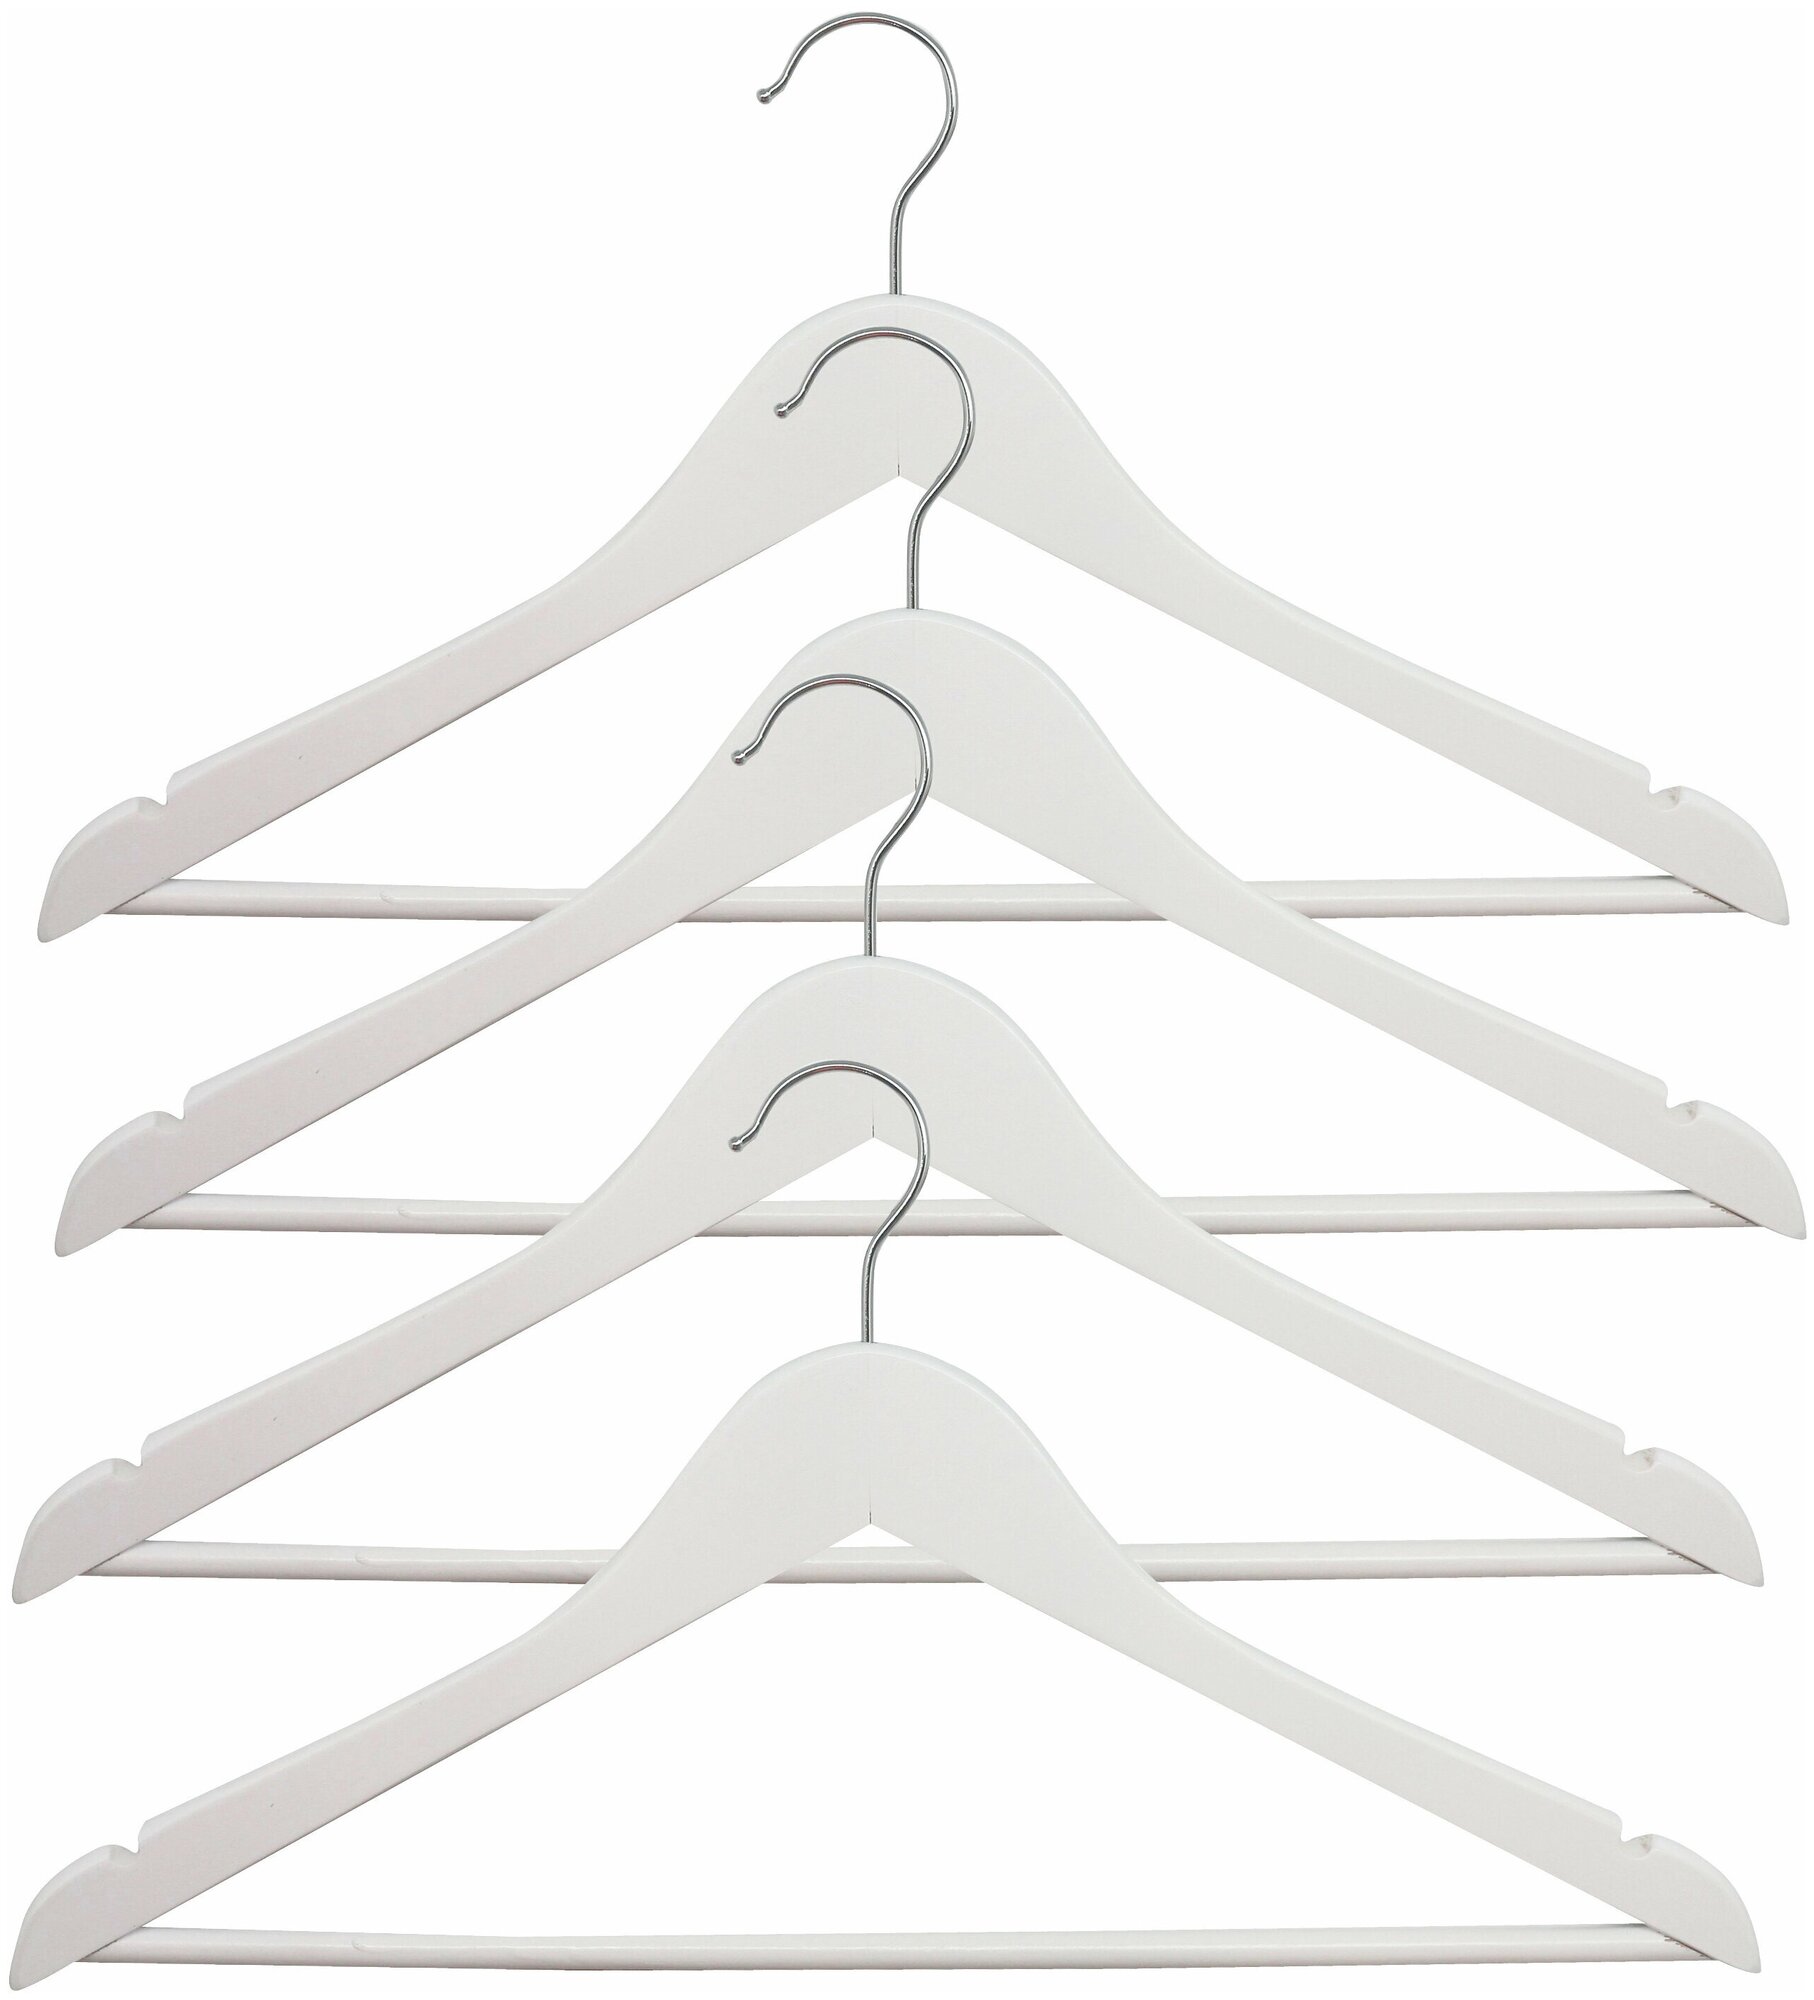 Набор деревянных вешалок для одежды 445x230x12 мм 4 шт цвет белый. Закругленные края изделия защищают одежду от деформации и растягивании в плечах.